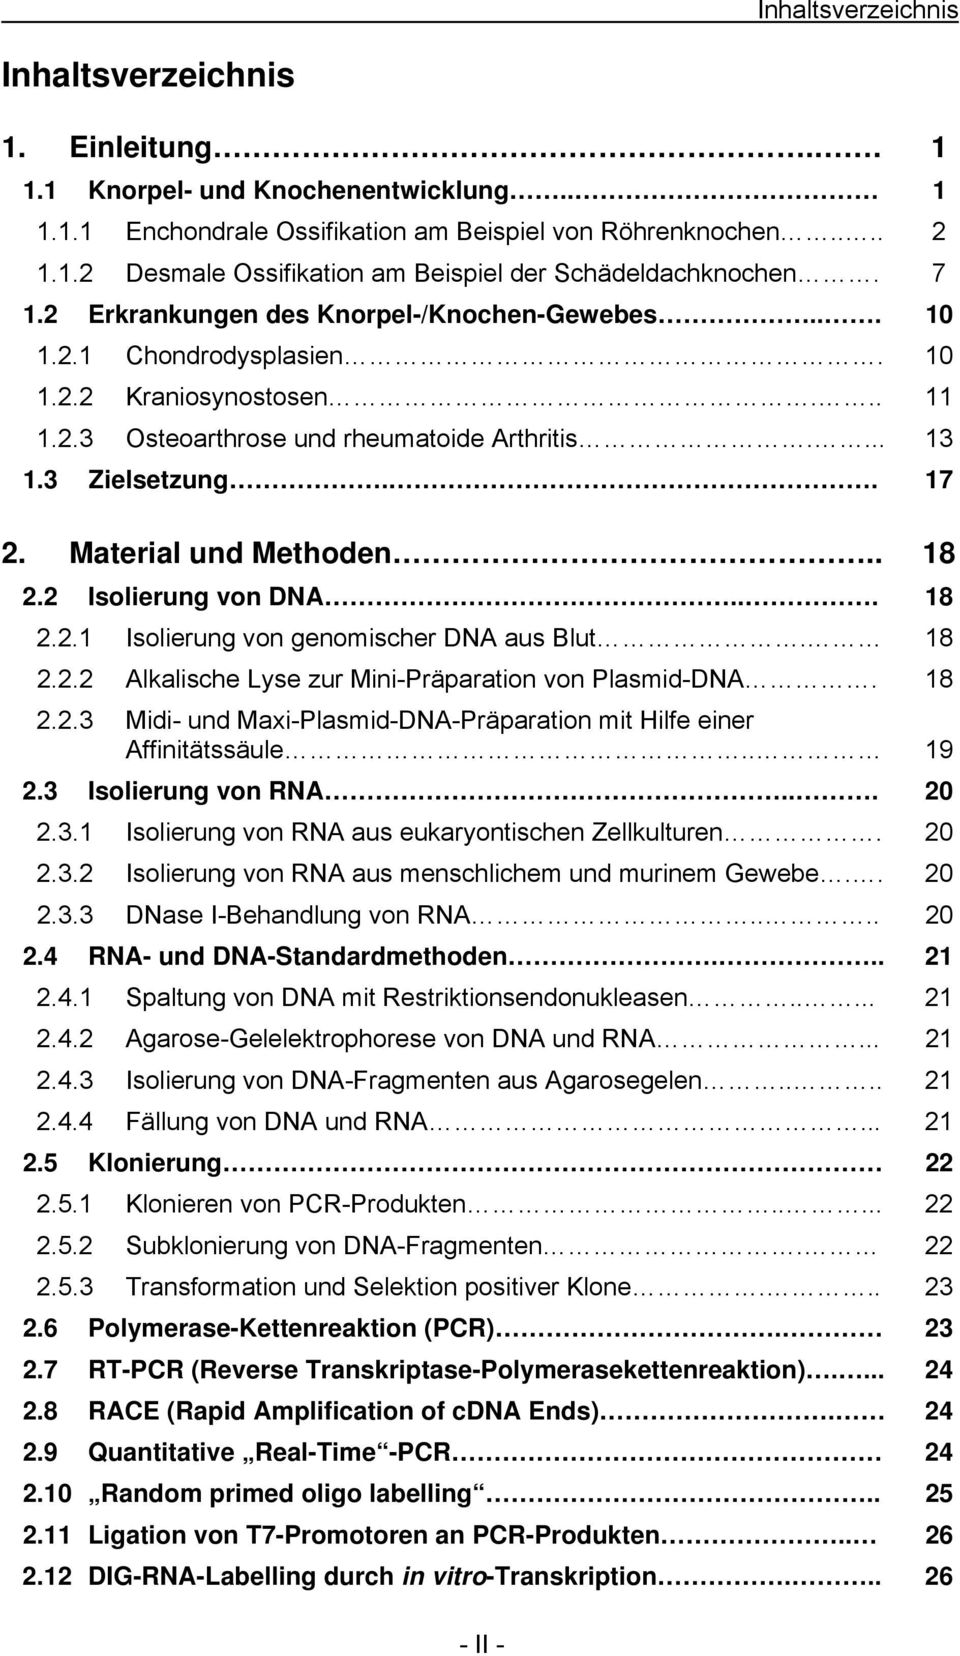 Material und Methoden.. 18 2.2 Isolierung von DNA... 18 2.2.1 Isolierung von genomischer DNA aus Blut. 18 2.2.2 Alkalische Lyse zur Mini-Präparation von Plasmid-DNA. 18 2.2.3 Midi- und Maxi-Plasmid-DNA-Präparation mit Hilfe einer Affinitätssäule.